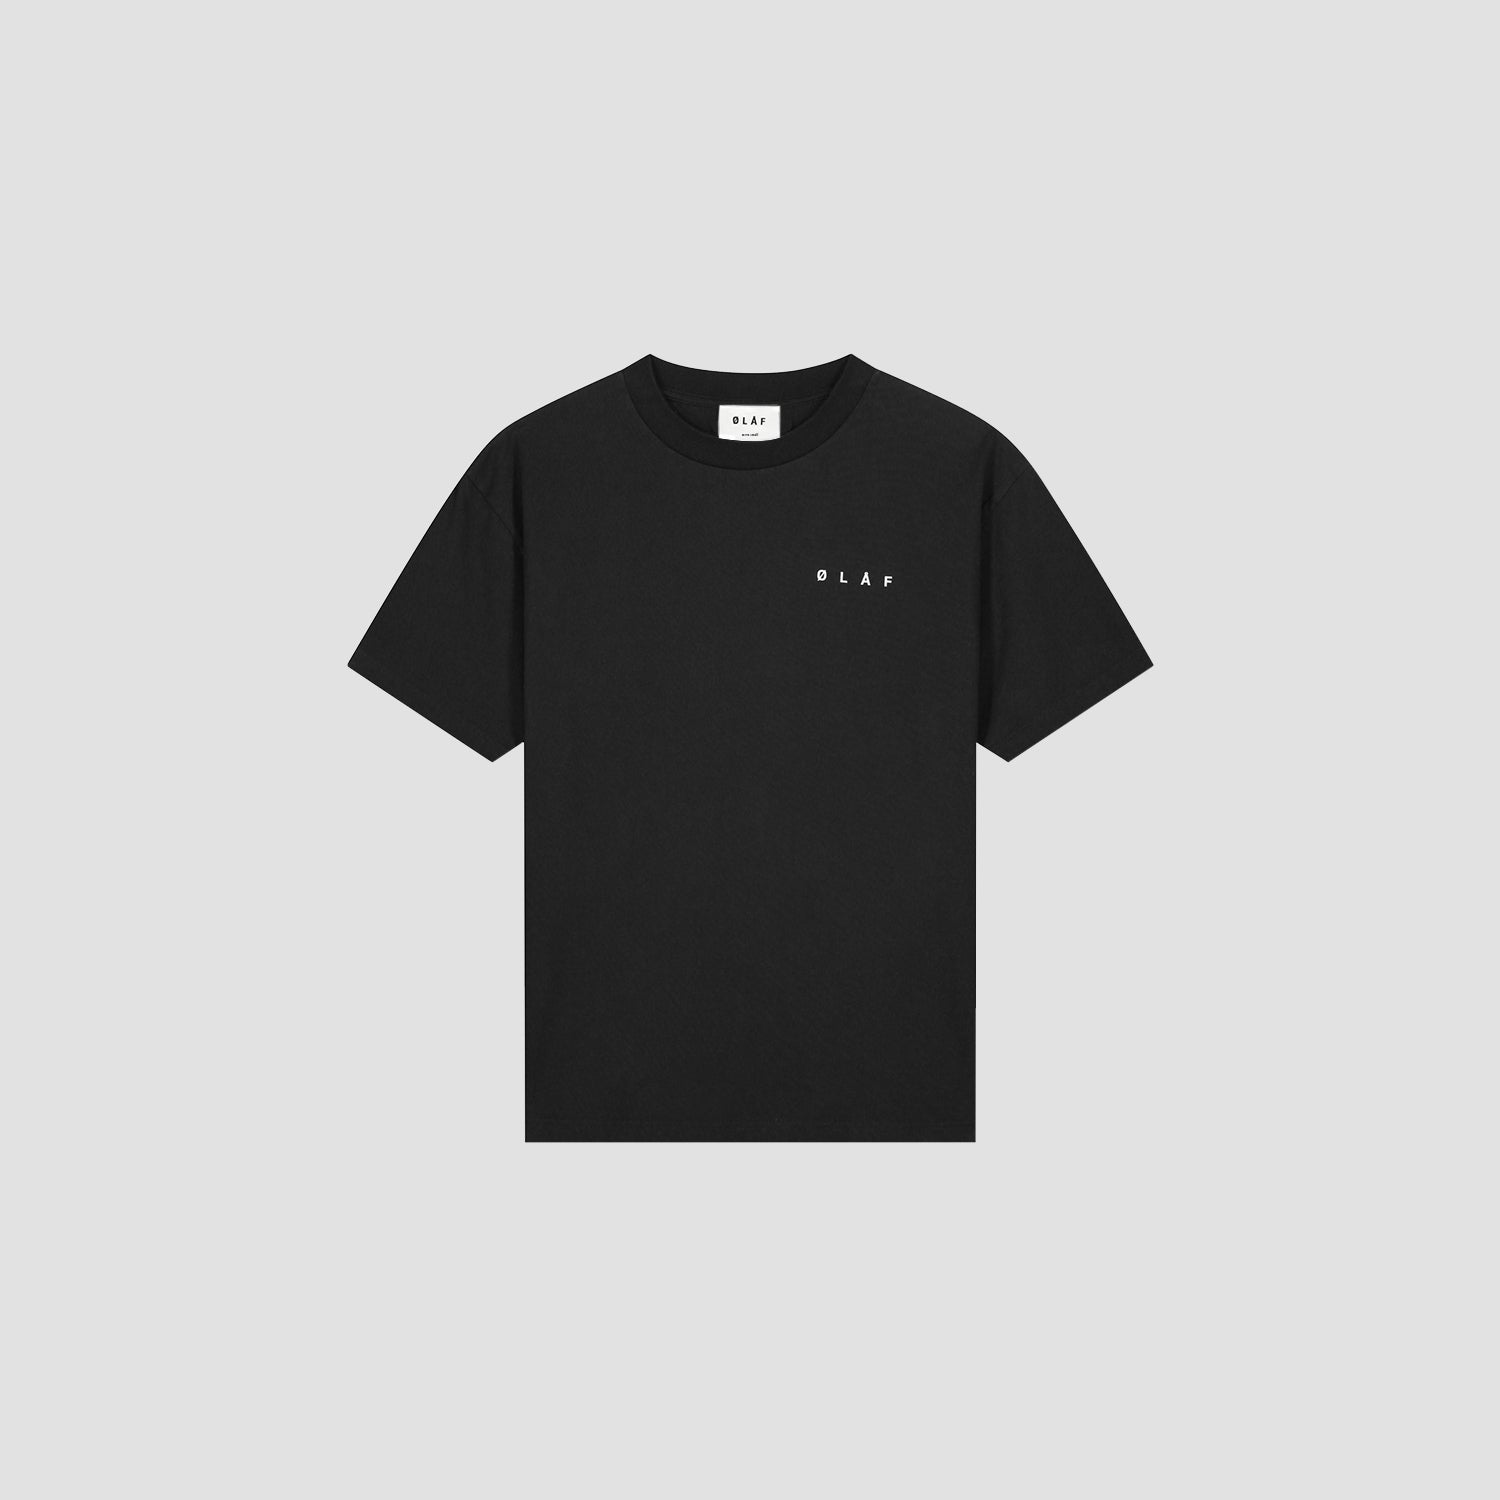 ØLÅF  Face T-shirt Black